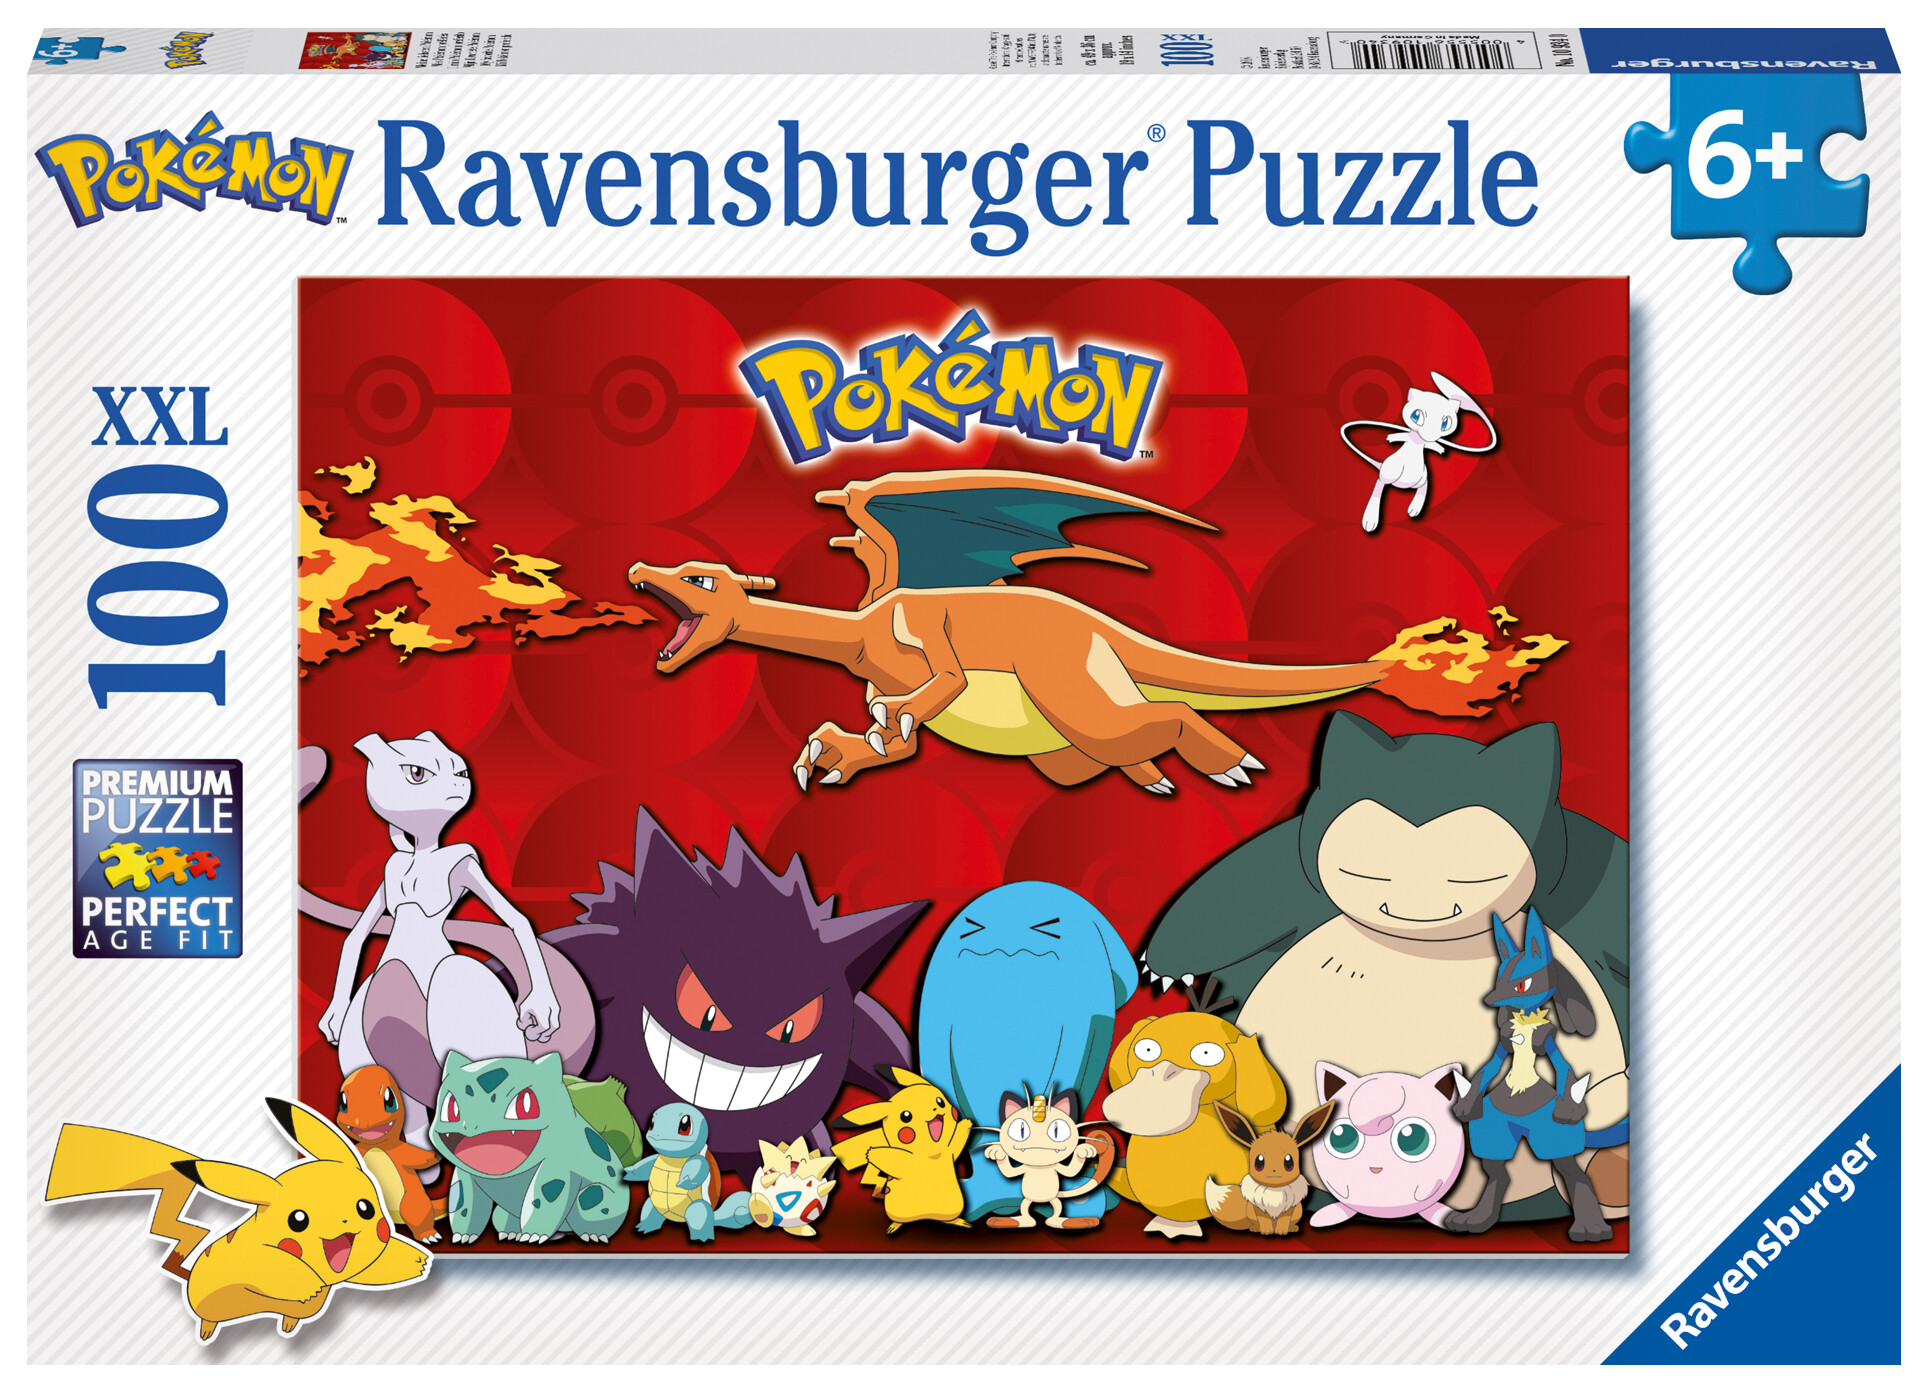 Ravensburger - puzzle pokémon, 100 pezzi xxl, età raccomandata 6+ anni - POKEMON, RAVENSBURGER